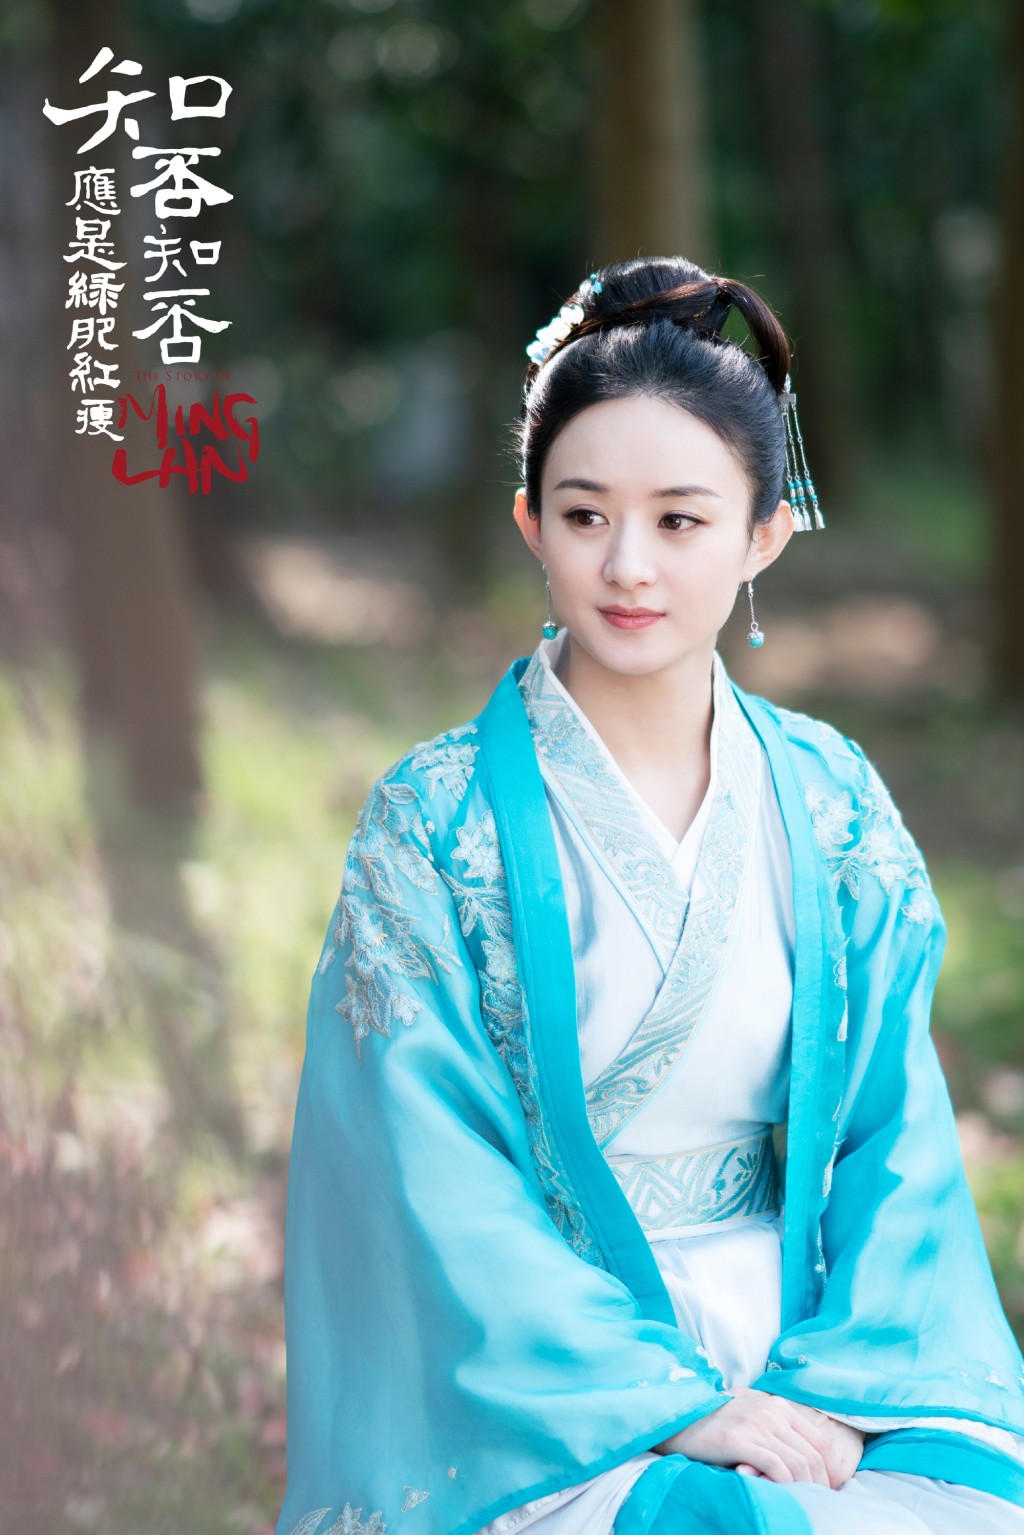 赵丽颖饰演盛家排行第六的庶女，自幼父亲不重视、众人欺压。